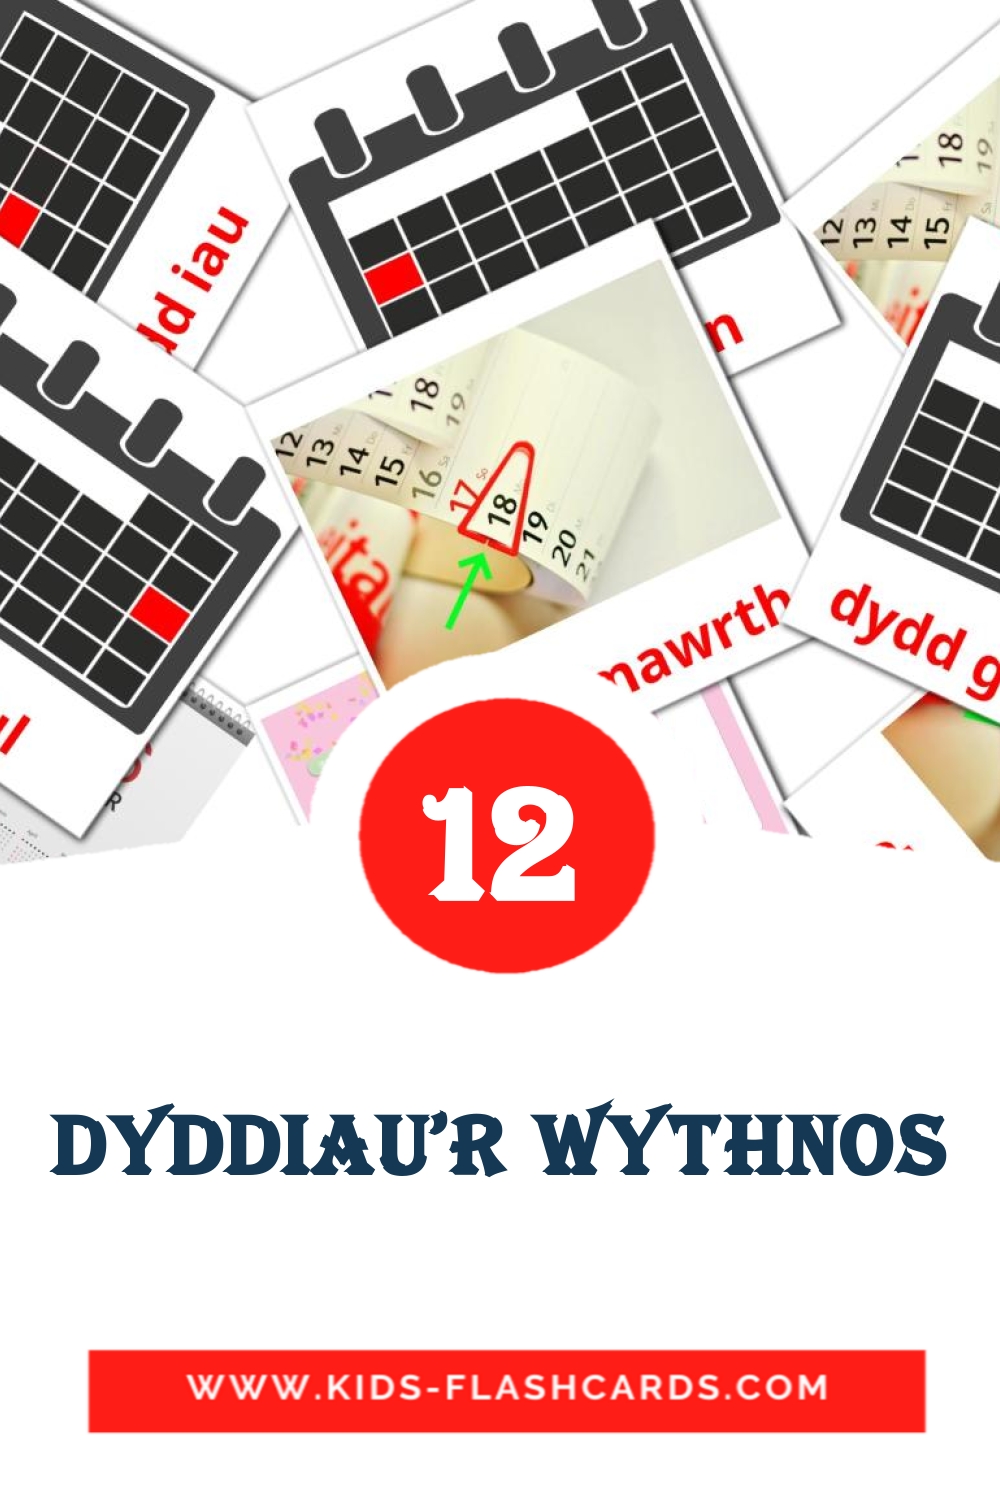 12 tarjetas didacticas de Dyddiau'r Wythnos para el jardín de infancia en galés